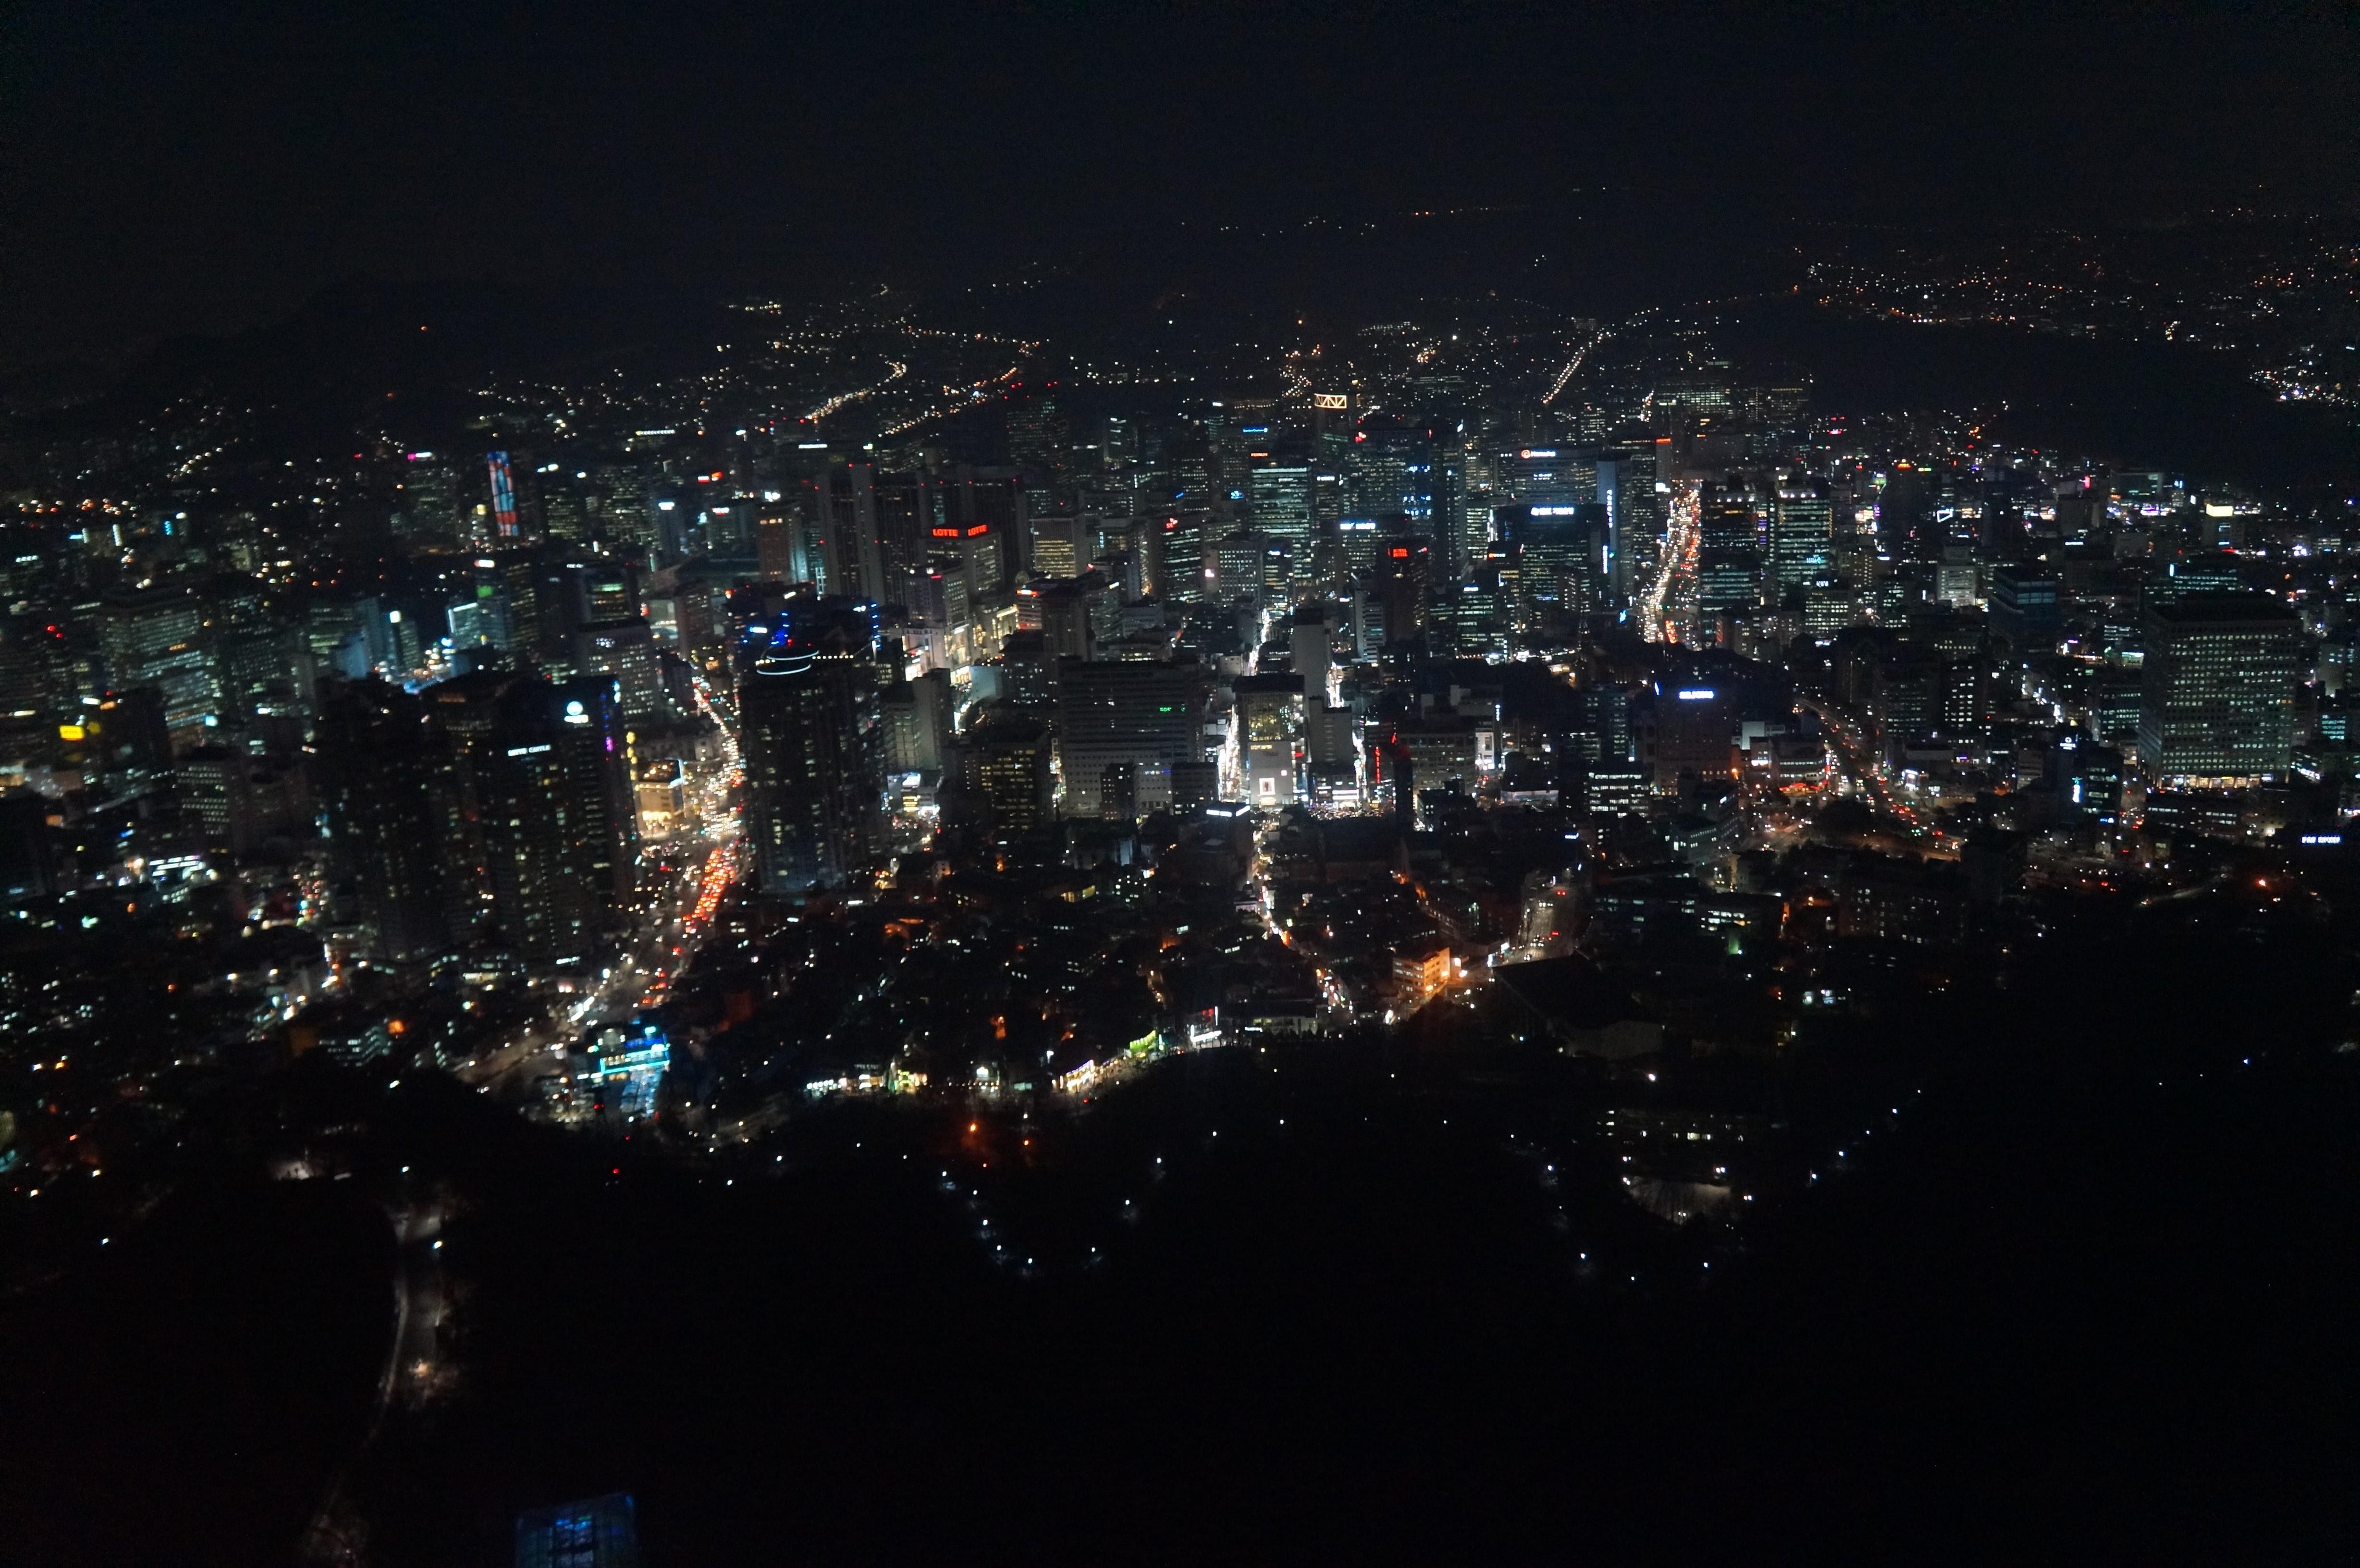 上海环球金融中心上夜景、首尔塔上夜景,香港